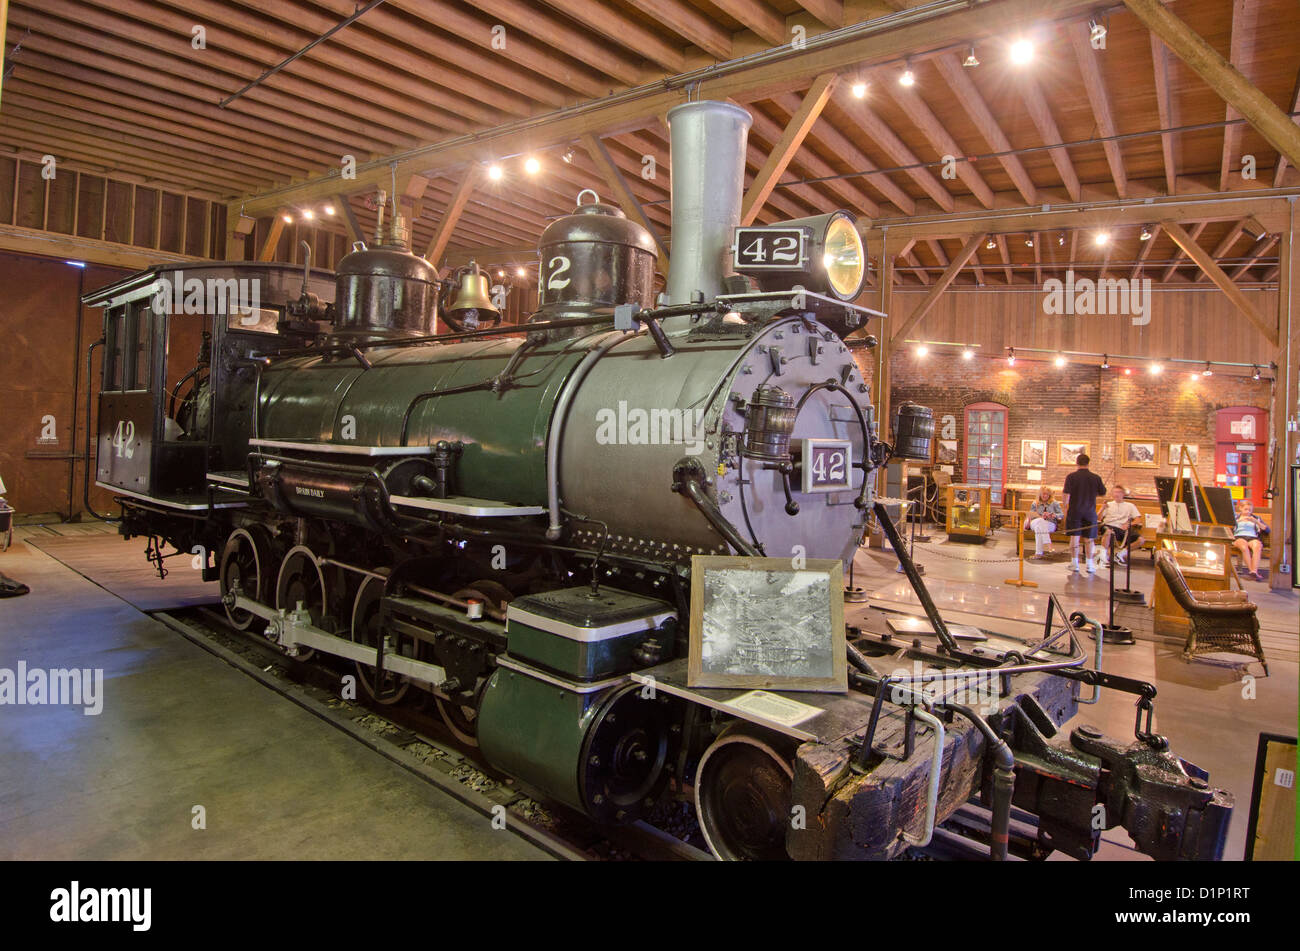 Colorado Durango historique avec son célèbre musée du chemin de fer et des trains Banque D'Images